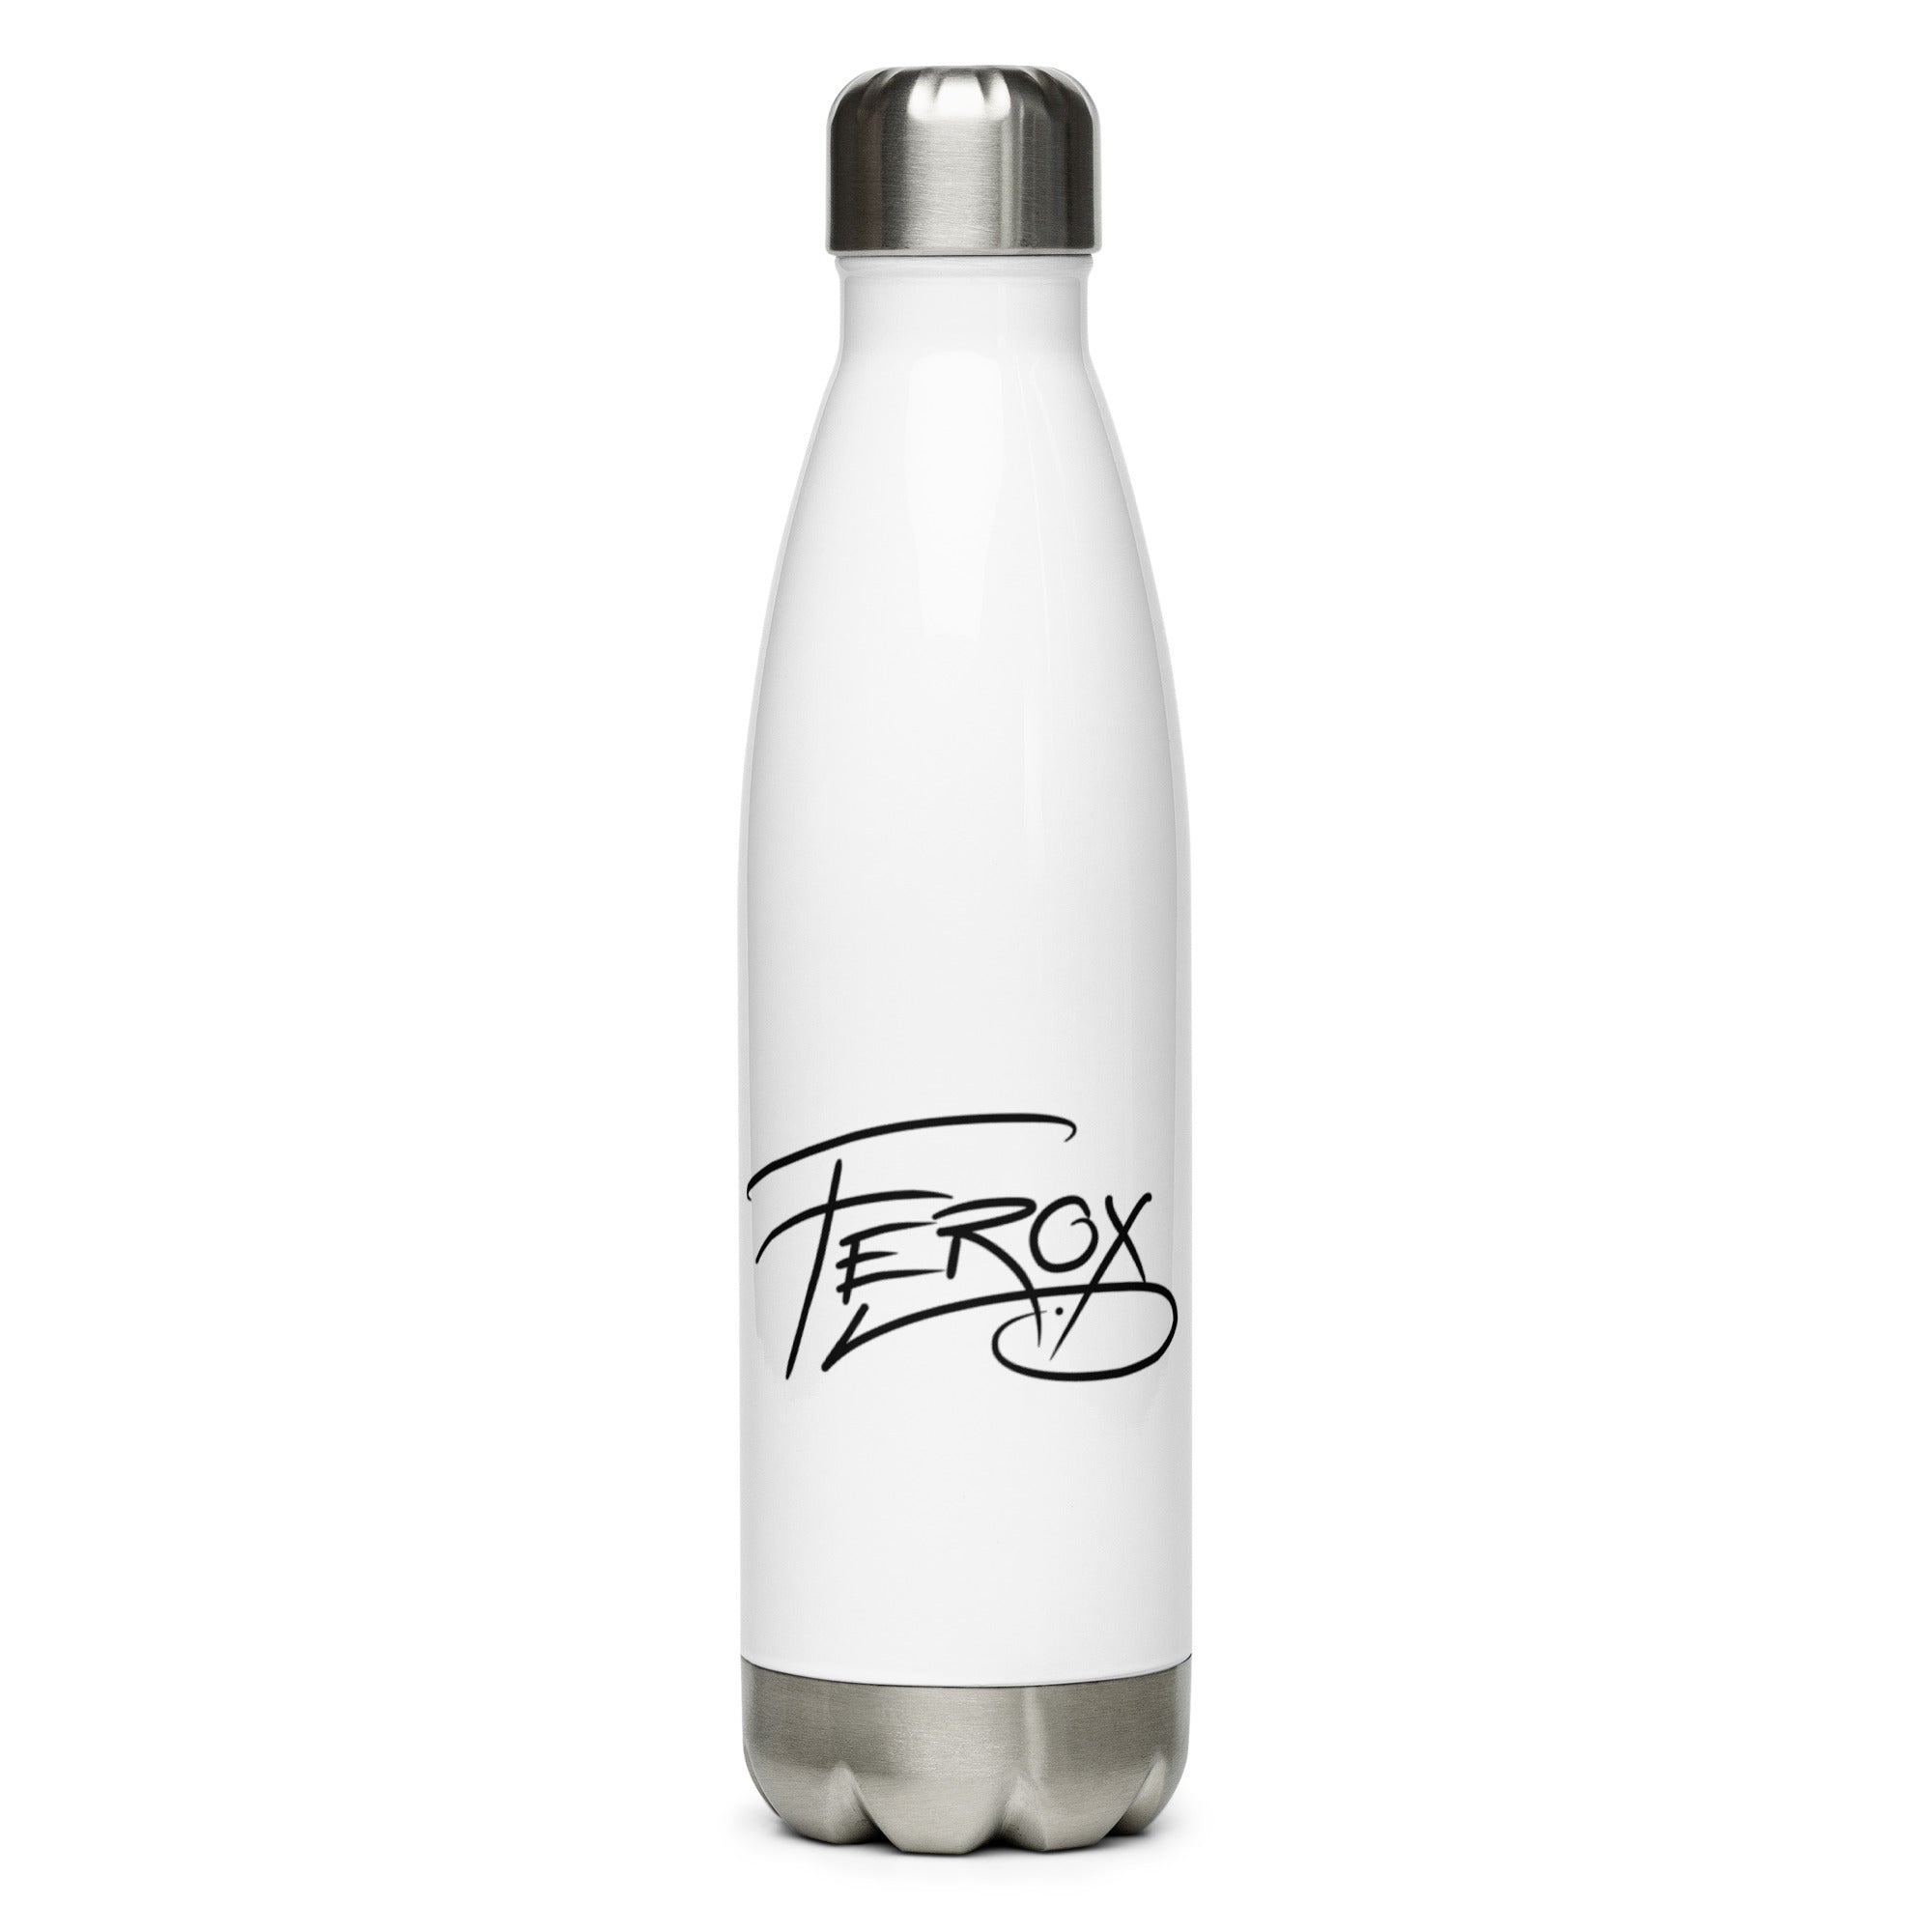 Ferox_K - Edelstahl Thermosflasche 500ml mit Logo